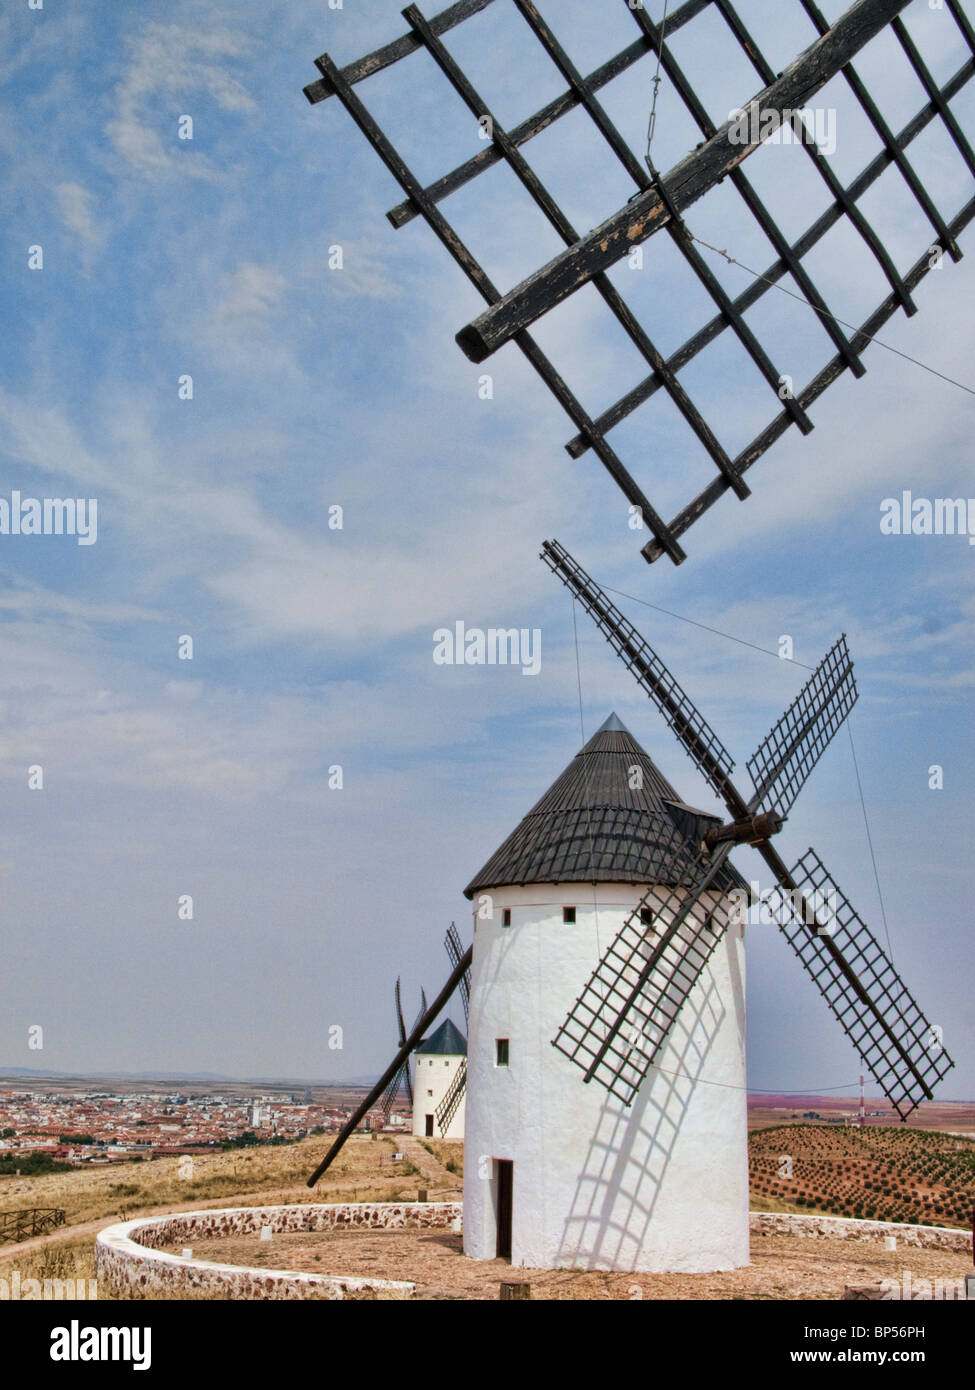 Windmills at Alcázar de San Juan (La Mancha: Don Quixote's land) Stock Photo